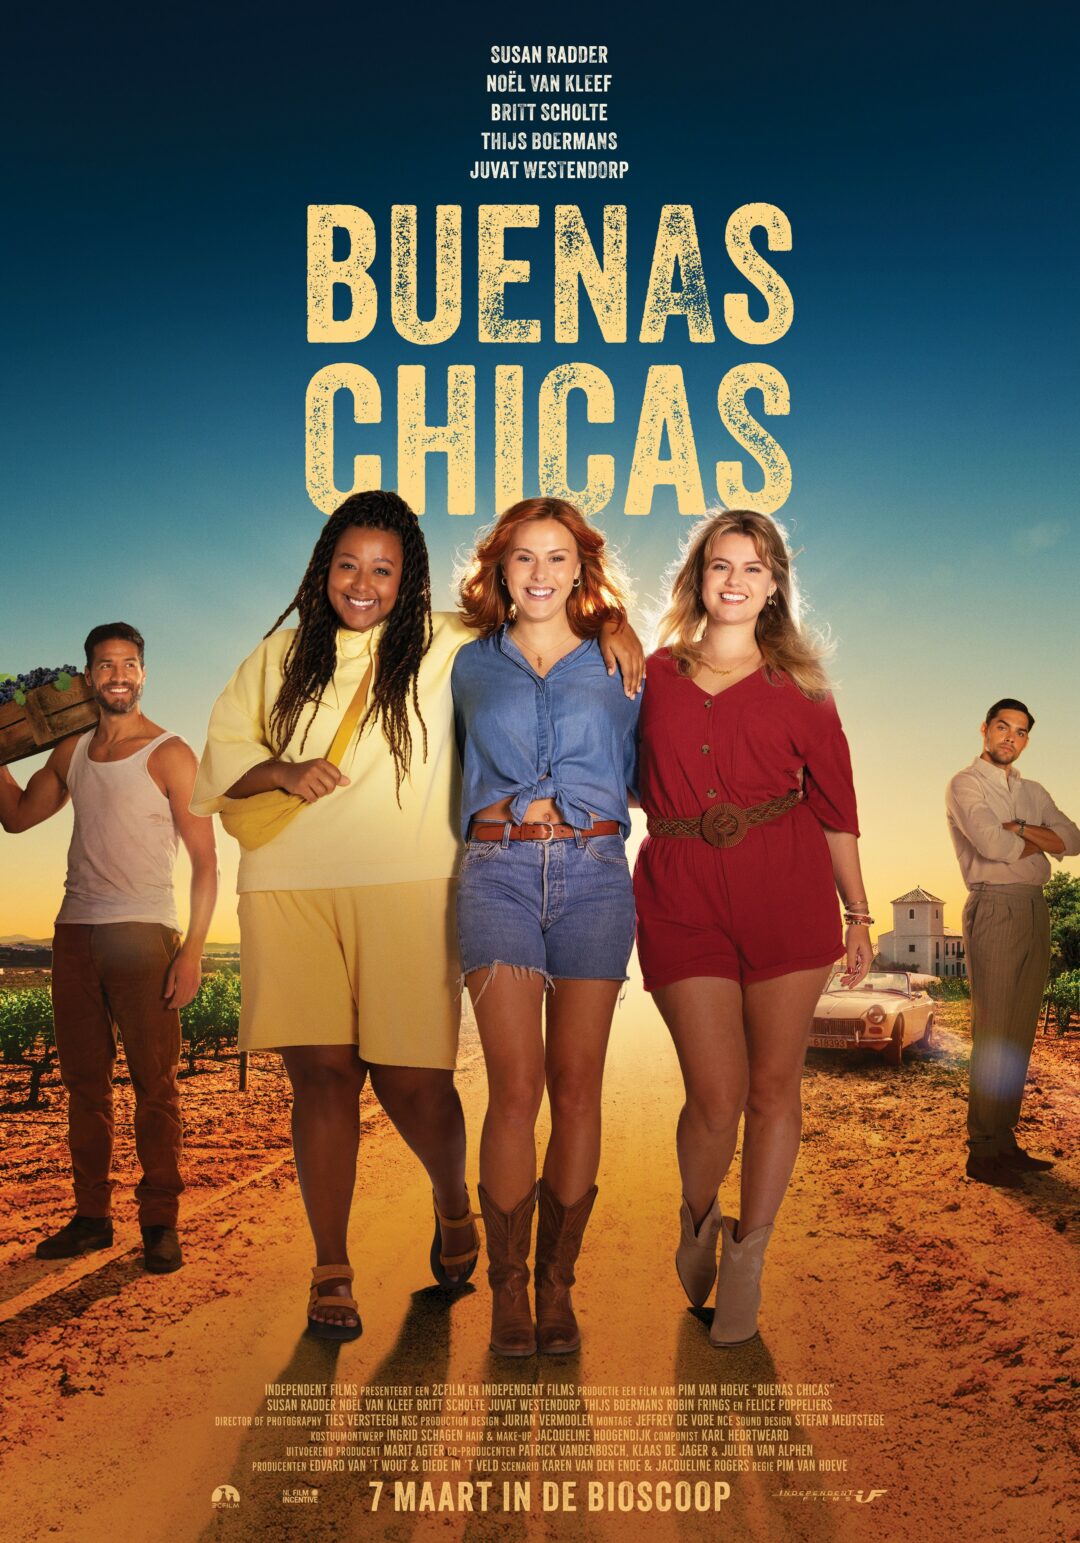 Buenas-Chicas_ps_1_jpg_sd-high_Photo-by-Ties-Versteegh.jpg